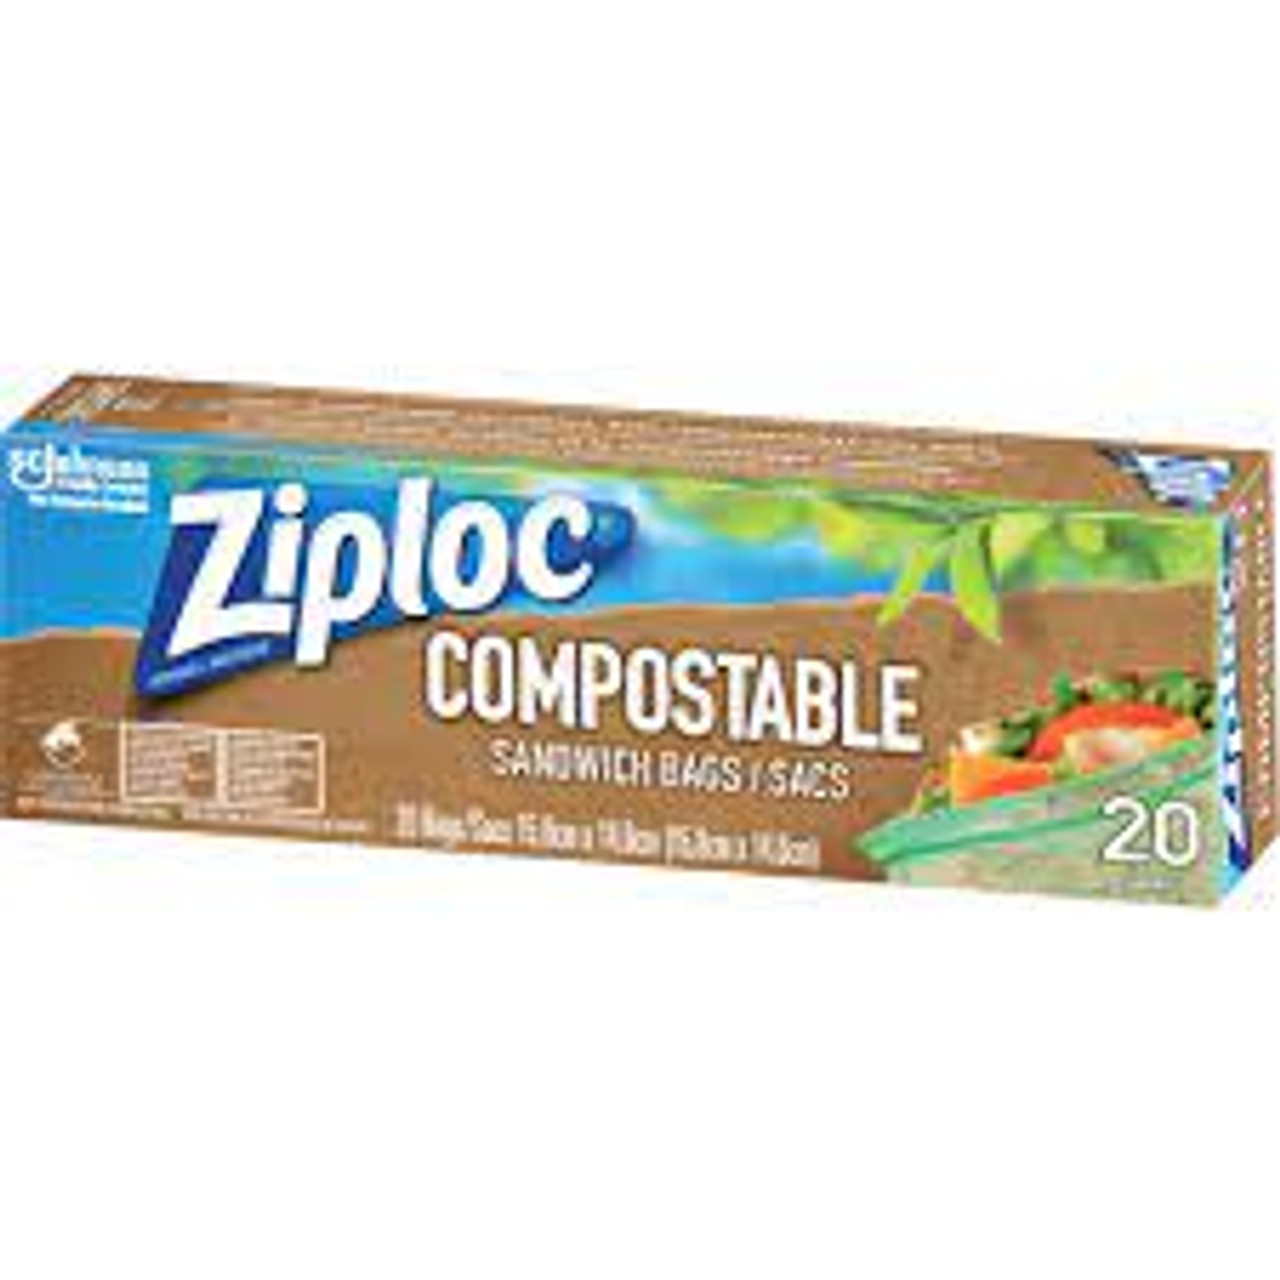 Sacs sandwich compostables Ziploc